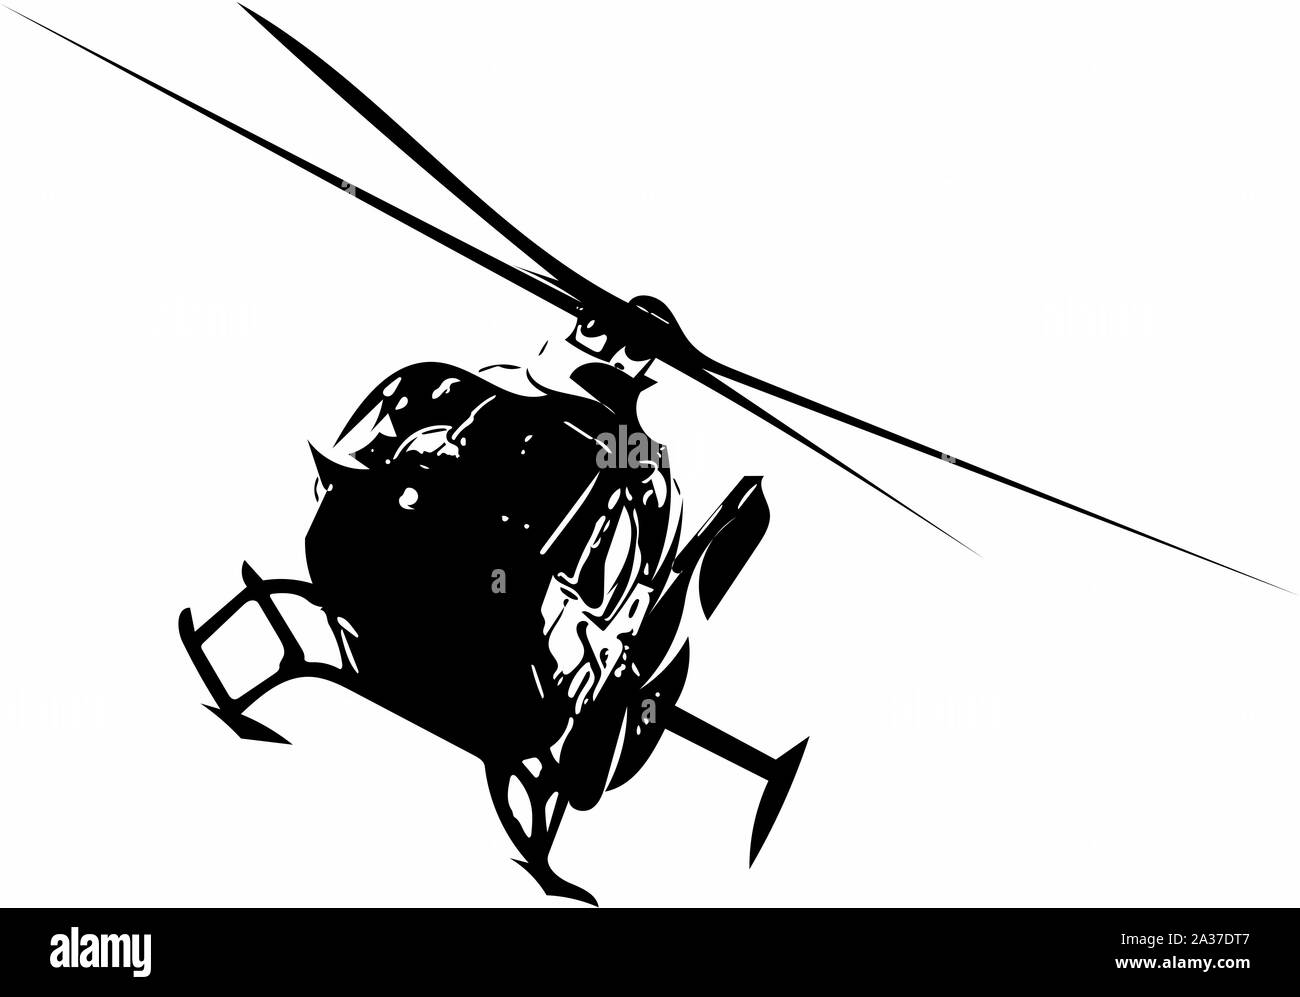 Kunstvoll und verzierten Bild von einem Hubschrauber in den Farben schwarz und weiß Optik Stockfoto